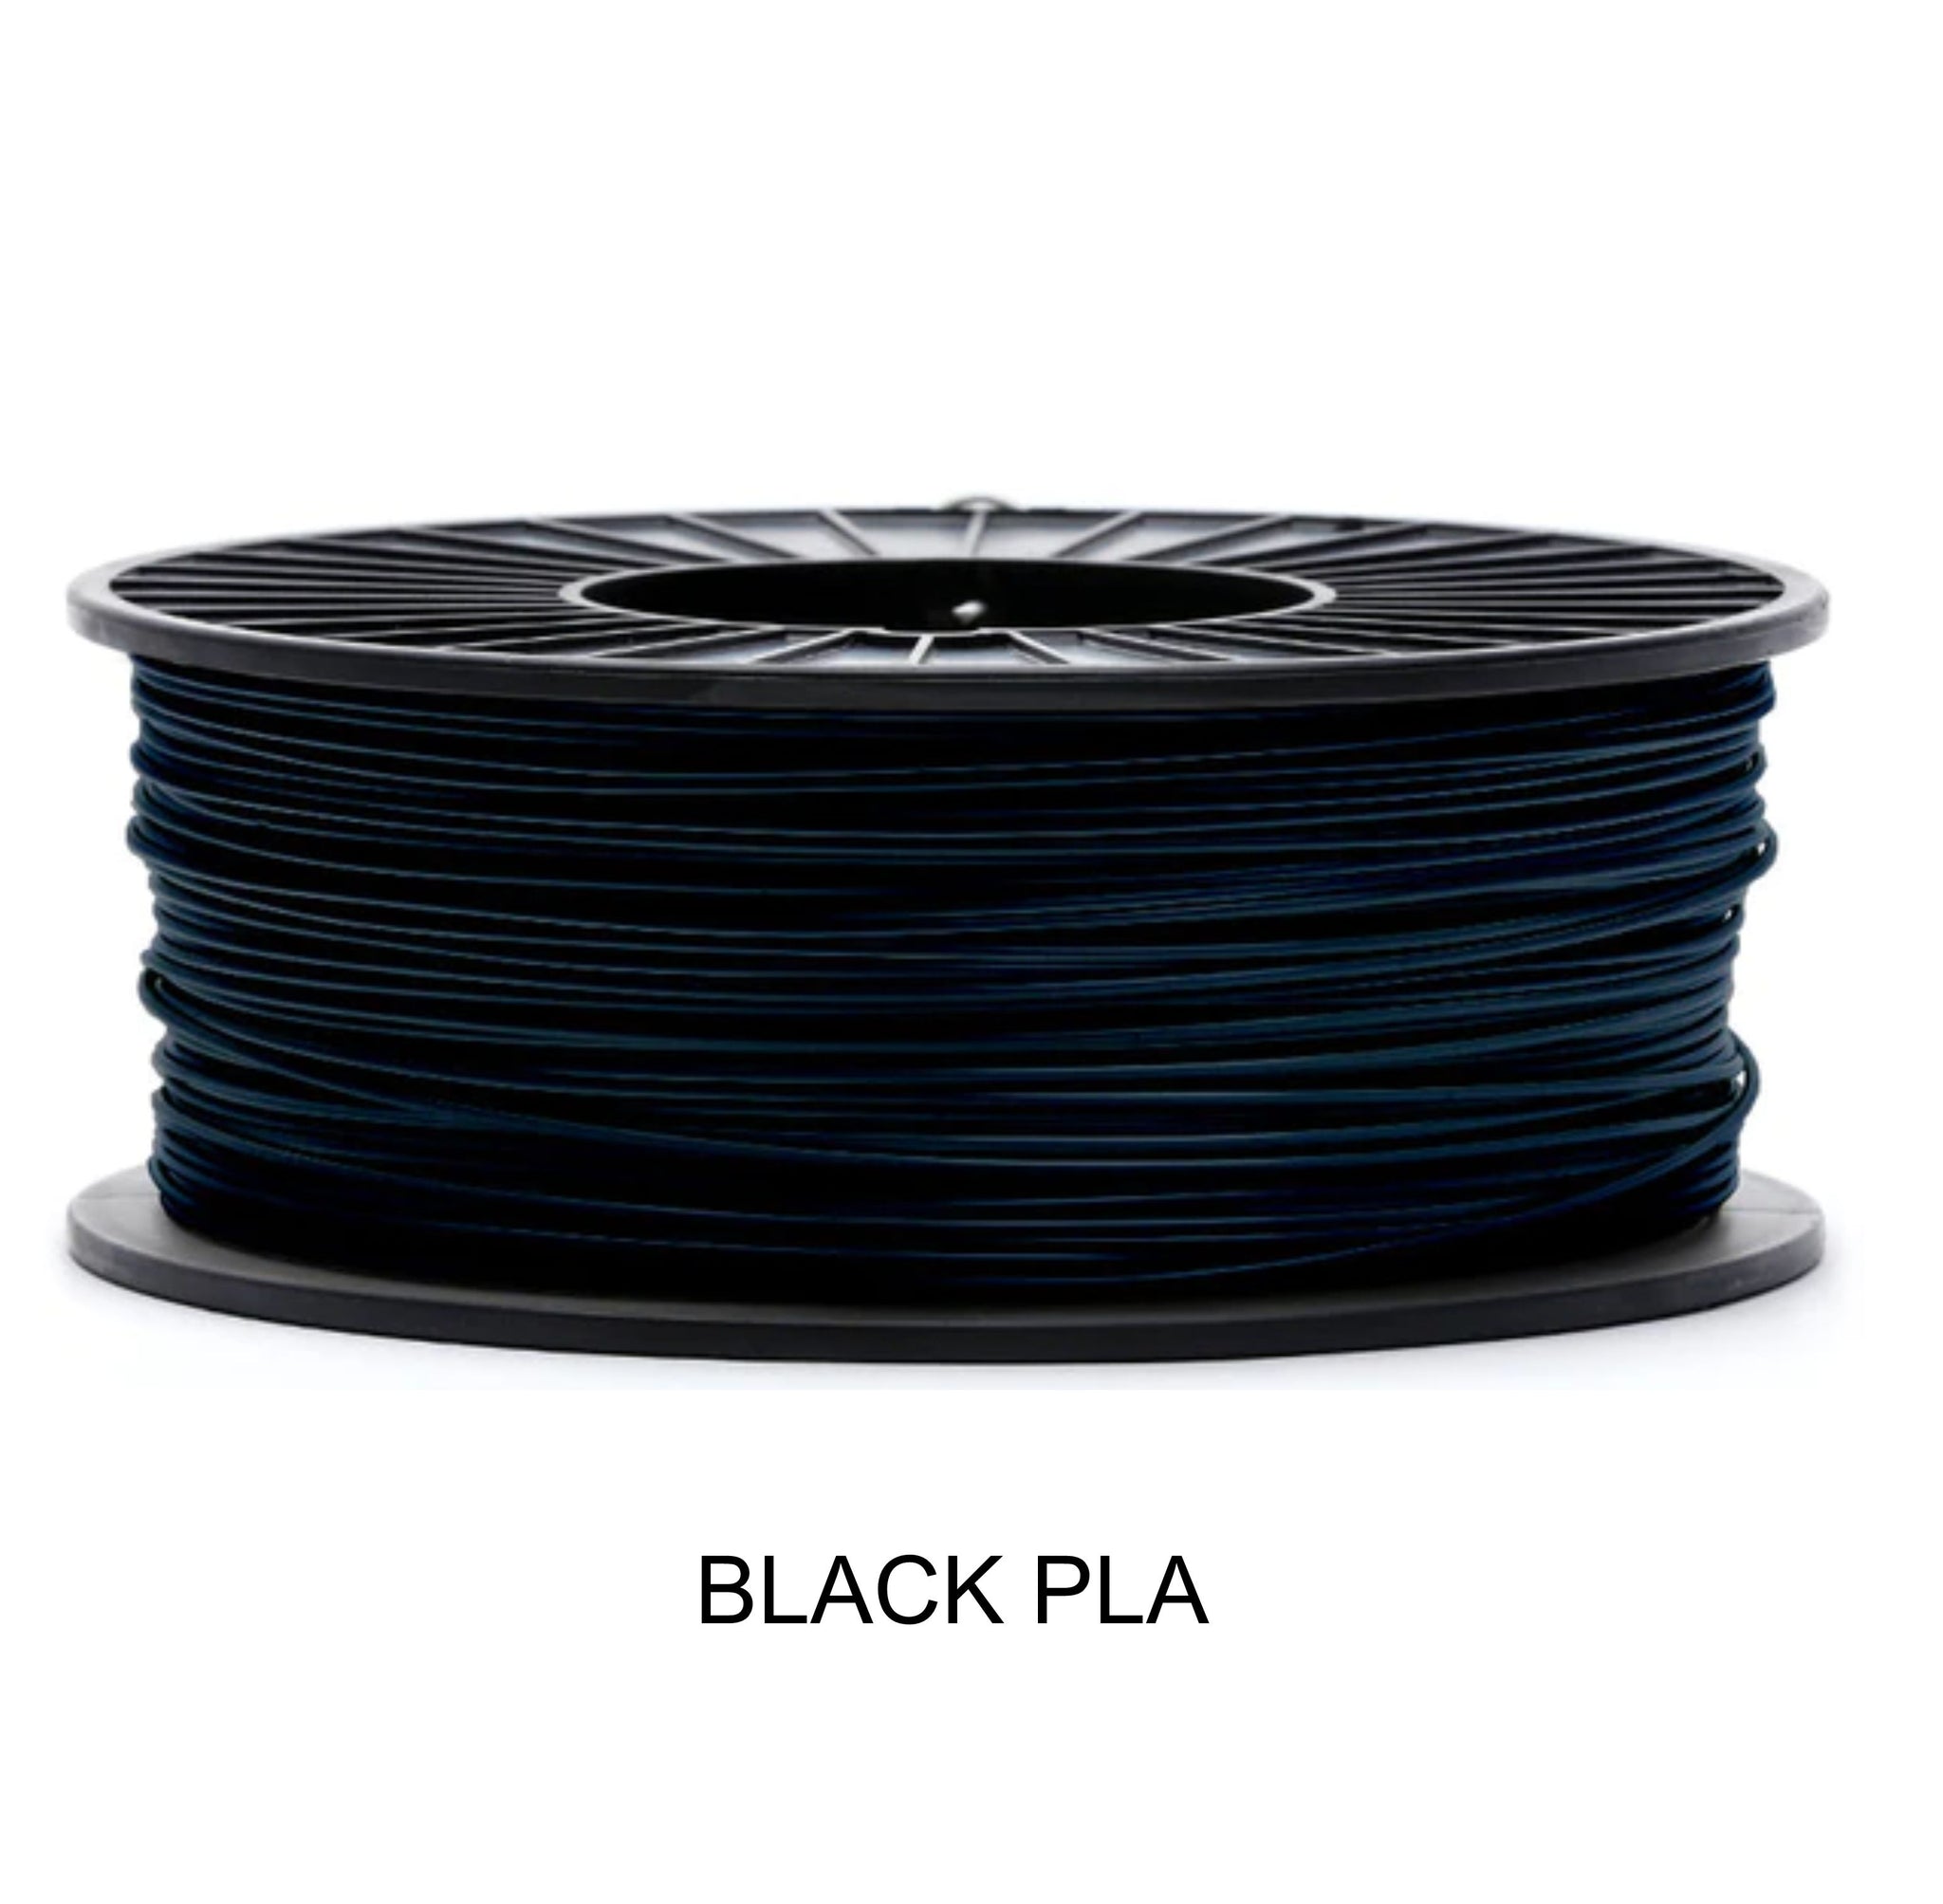 Black PLA - COEX 3D